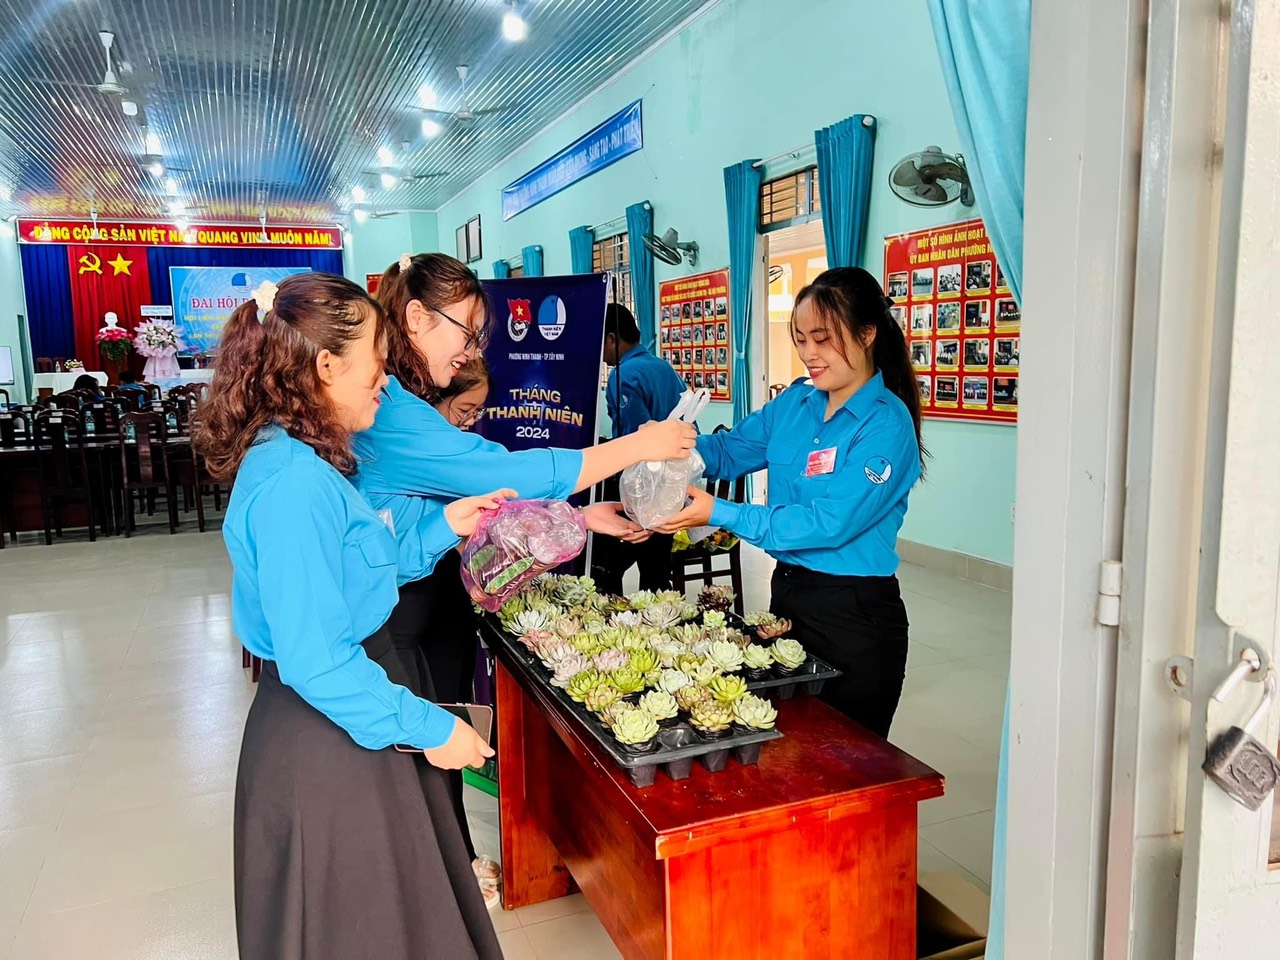 Đoàn Thanh niên - Uỷ ban Hội phường Ninh Thạnh tổ chức Chương trình “Đổi chai lấy cây xanh”